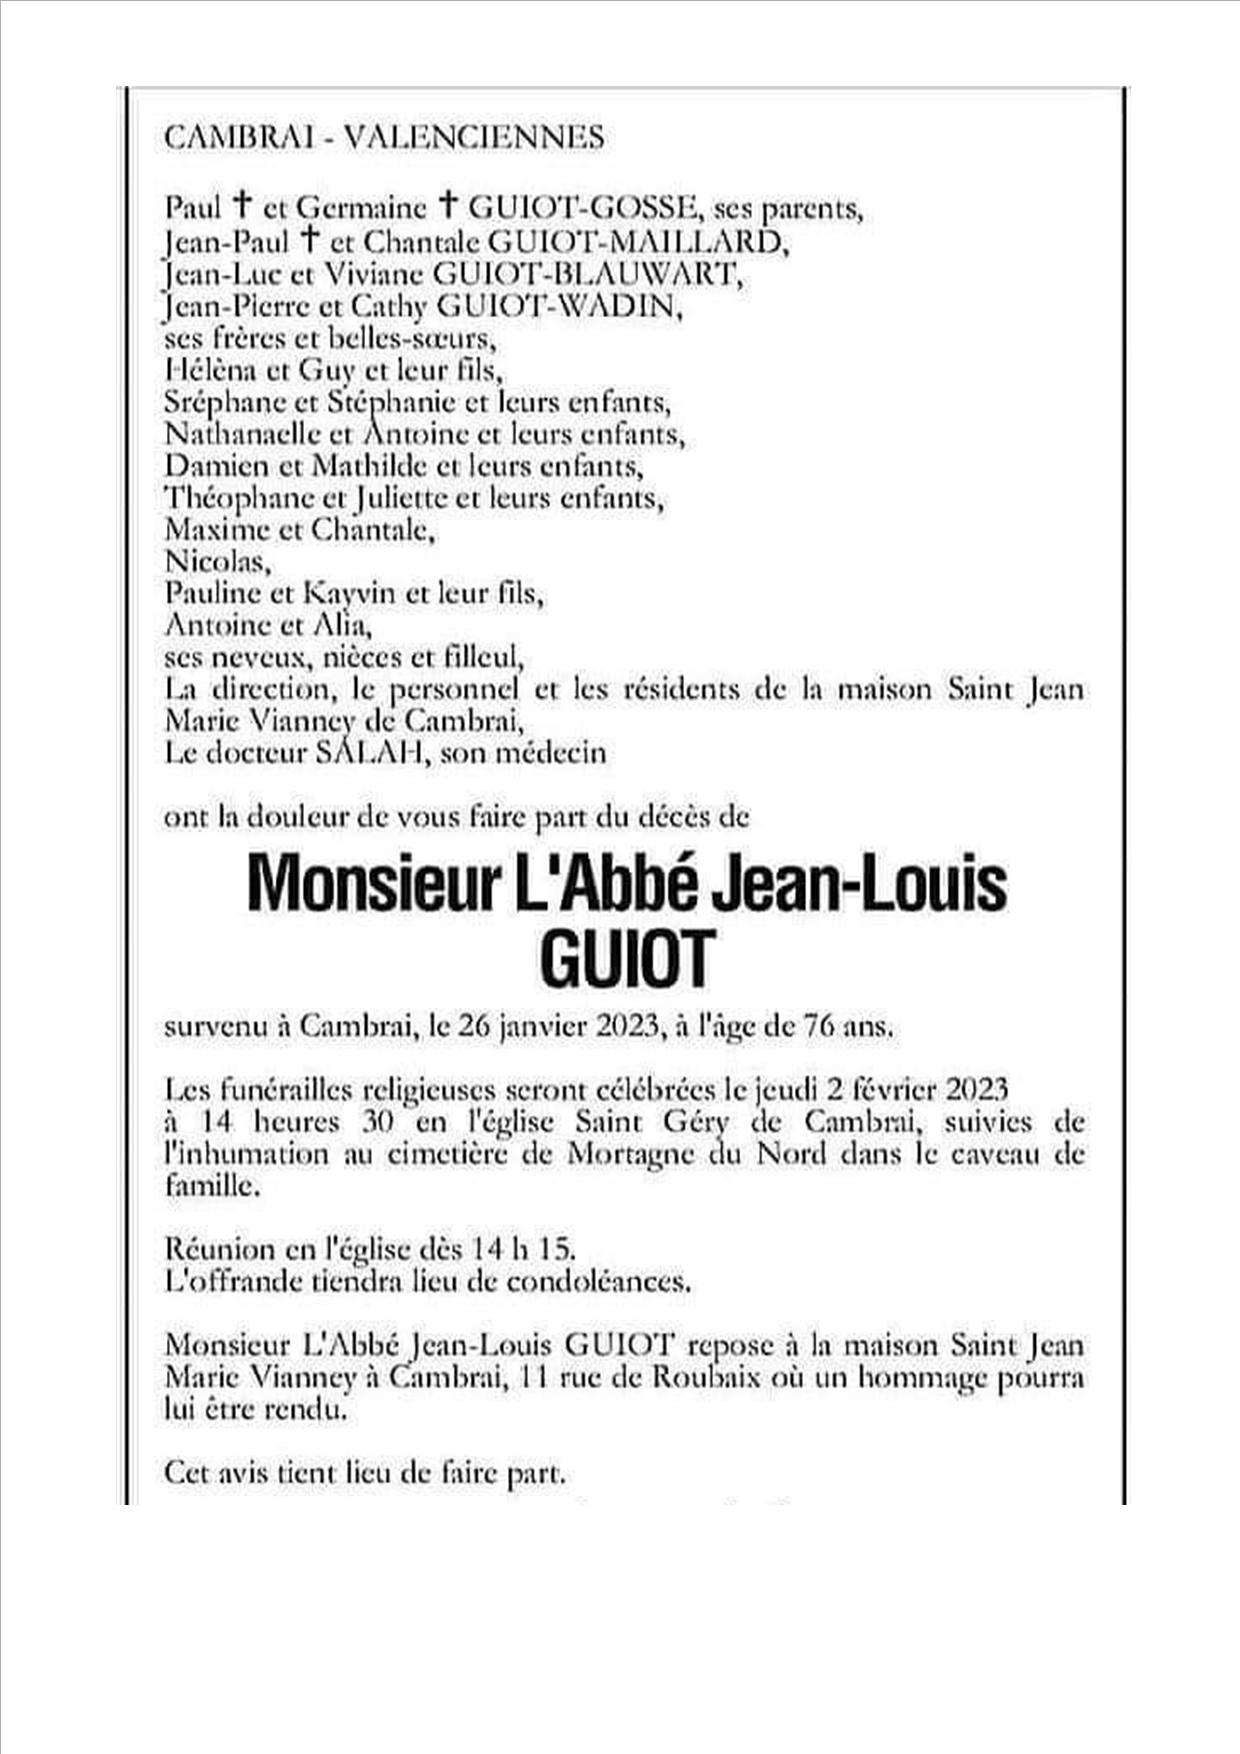 AbbAc J L Guiot